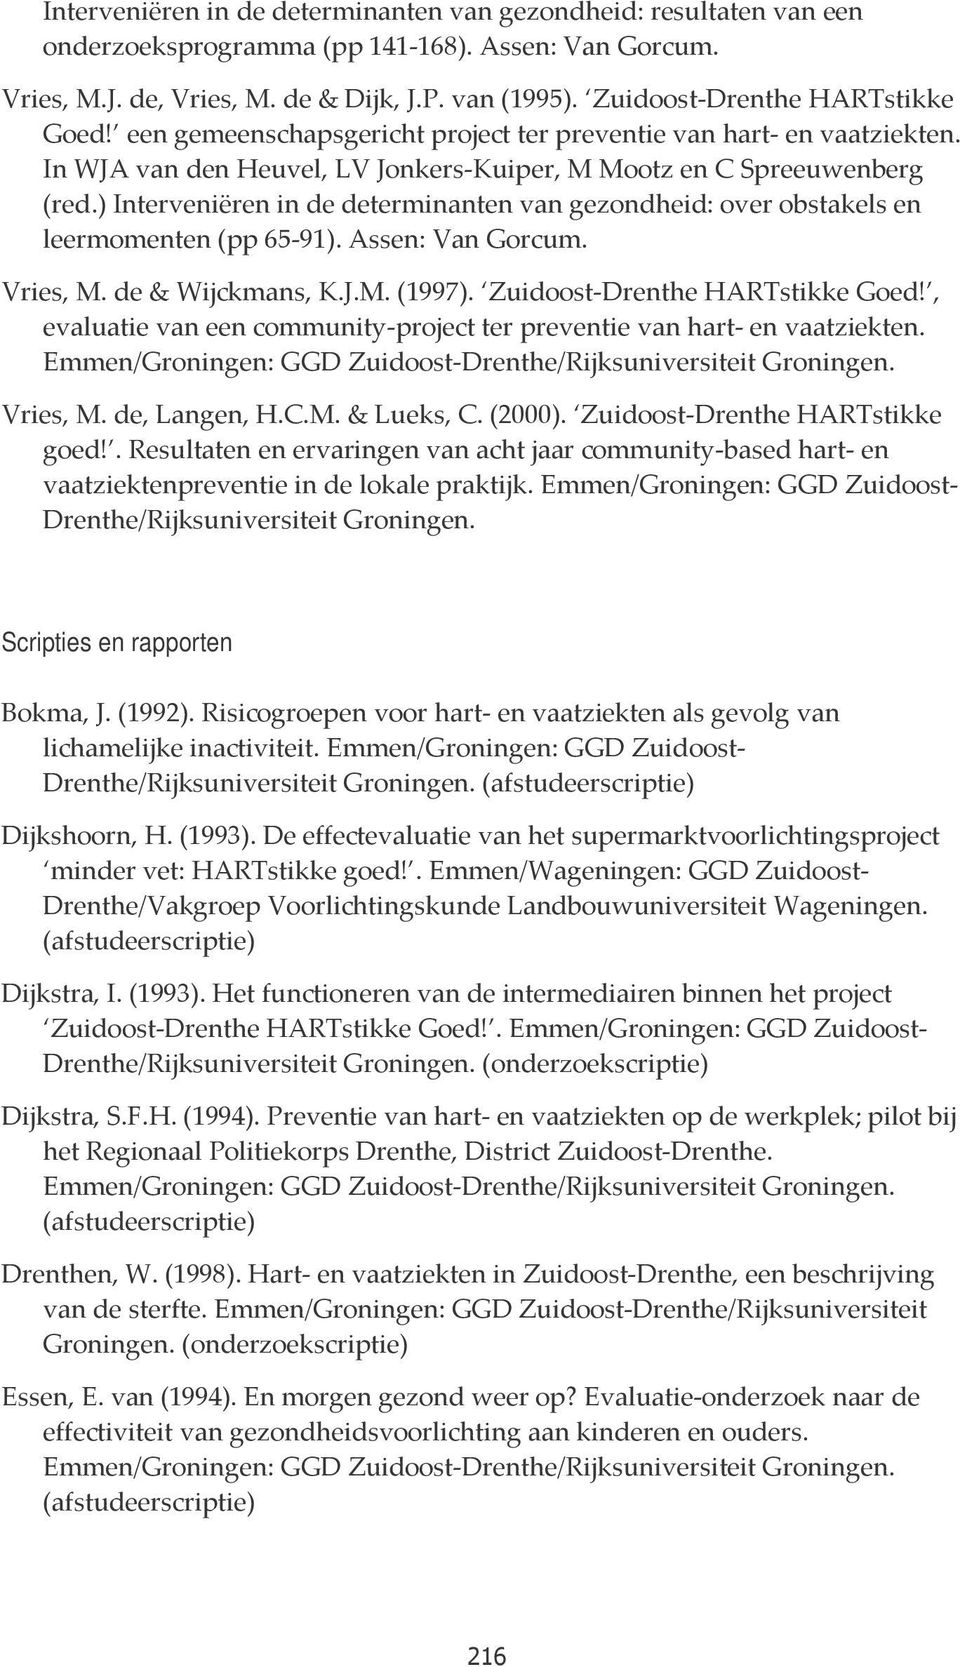 ) Interveniëren in de determinanten van gezondheid: over obstakels en leermomenten (pp 65-91). Assen: Van Gorcum. Vries, M. de & Wijckmans, K.J.M. (1997). Zuidoost-Drenthe HARTstikke Goed!